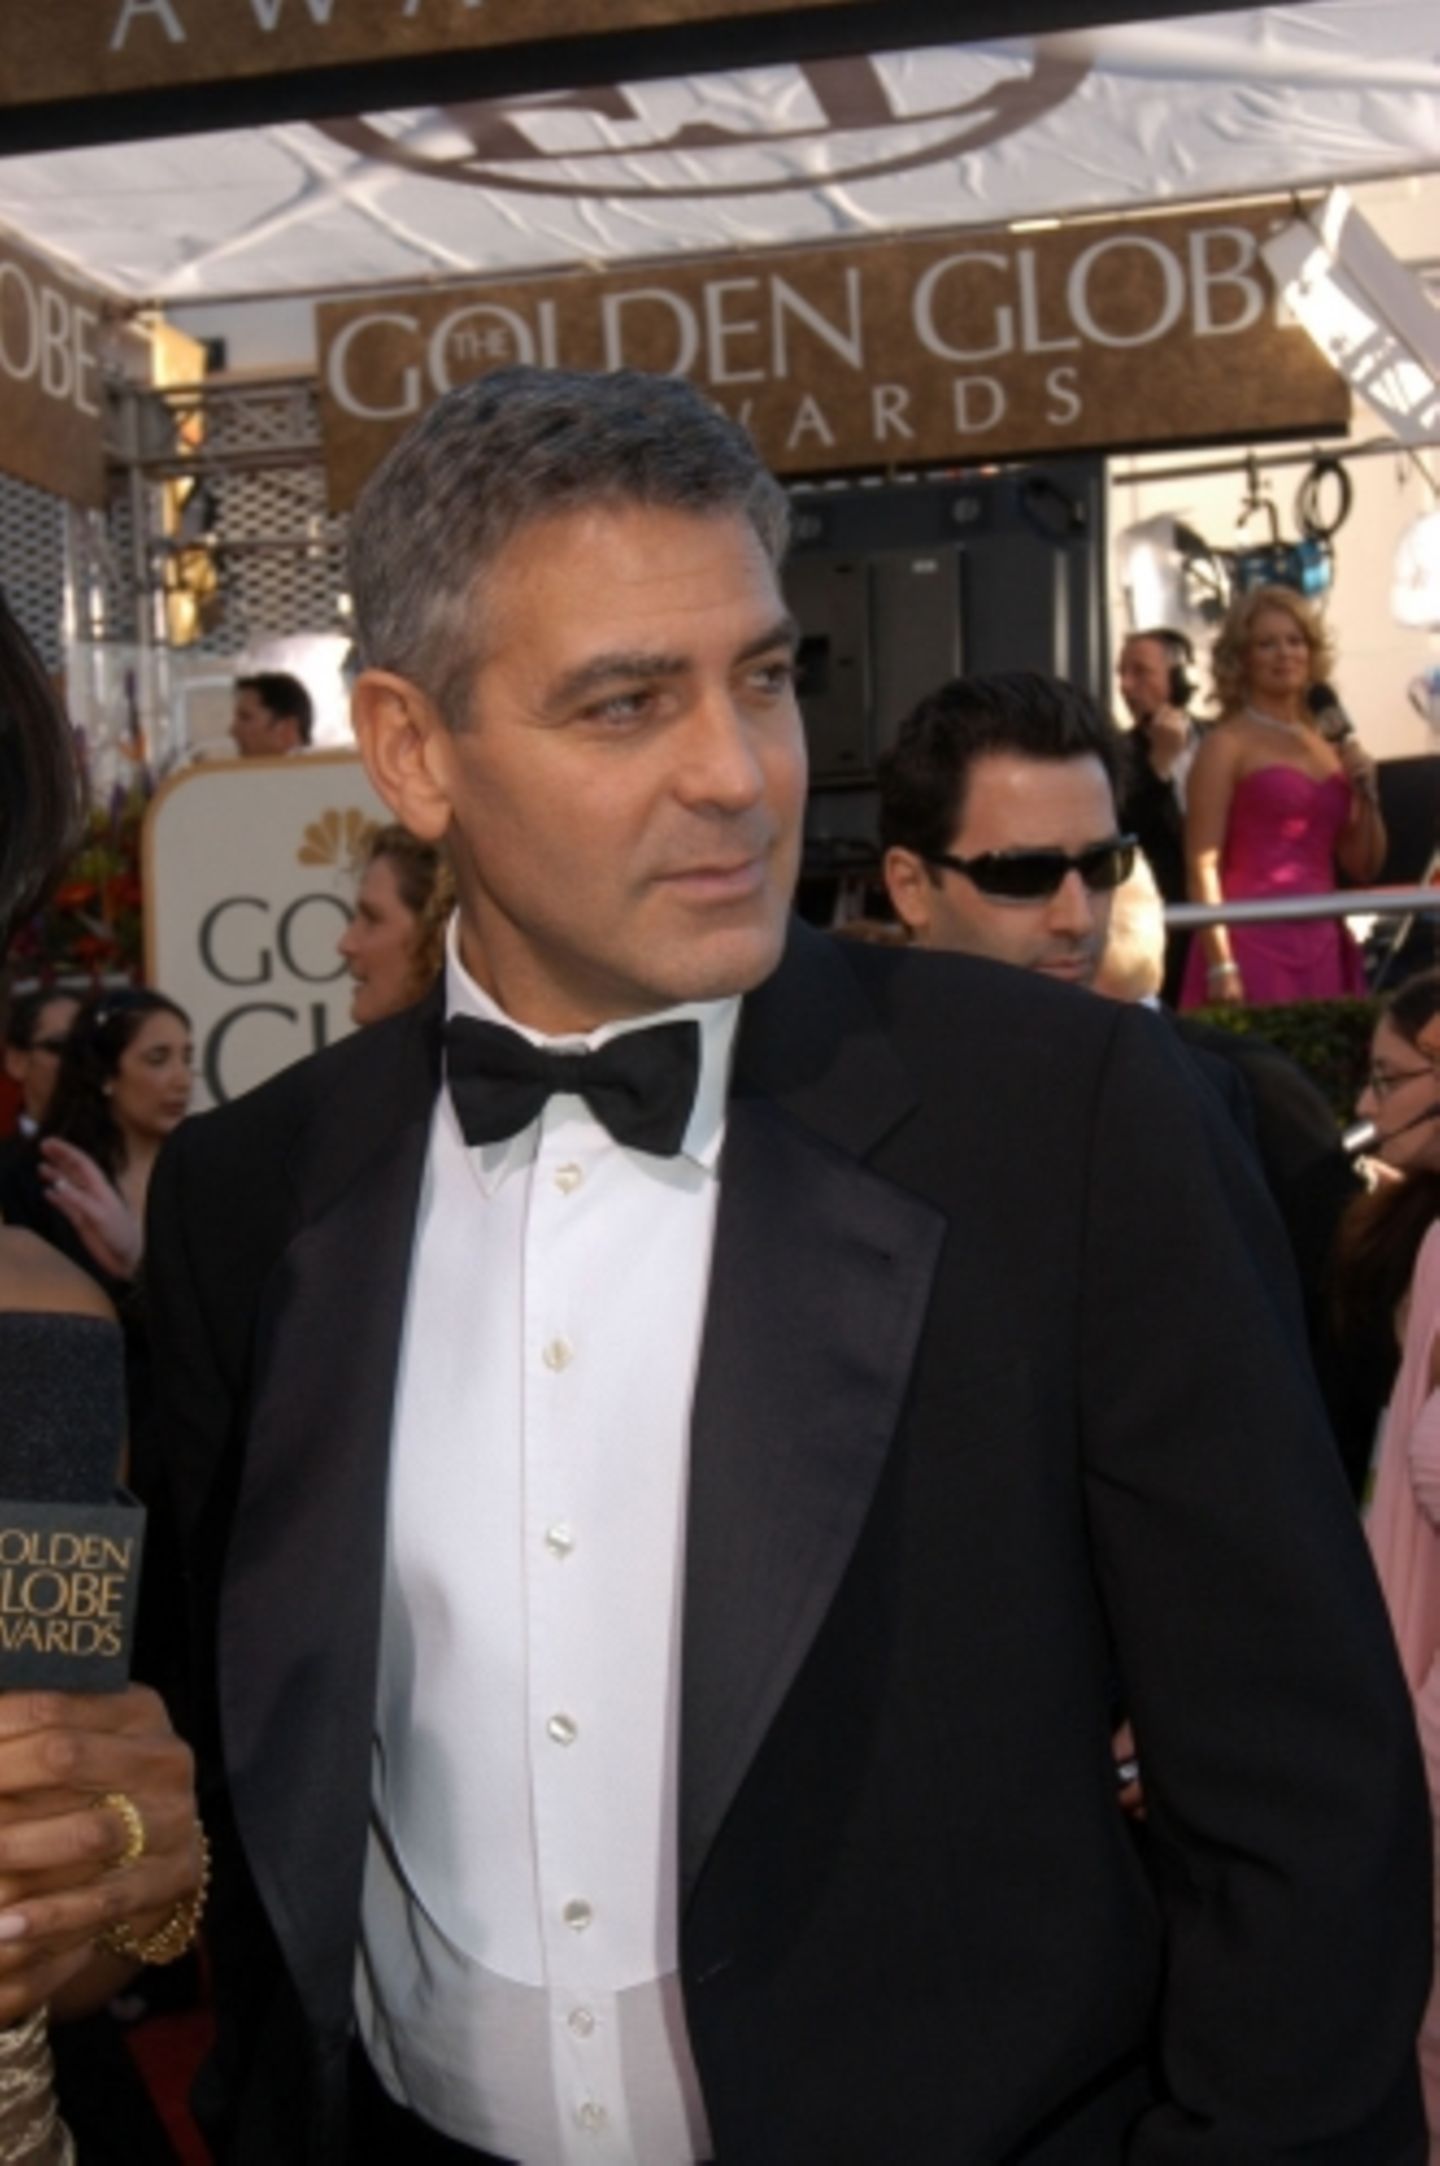 Es gab zwar keinen Preis für seinen ebenfalls in Sachen Oscar hoch gehandelten Film "Good Night, and Good Luck": Aber George Clooney selbst durfte einen Golden Globe für seine Nebenrolle in "Syriana" in Empfang nehmen